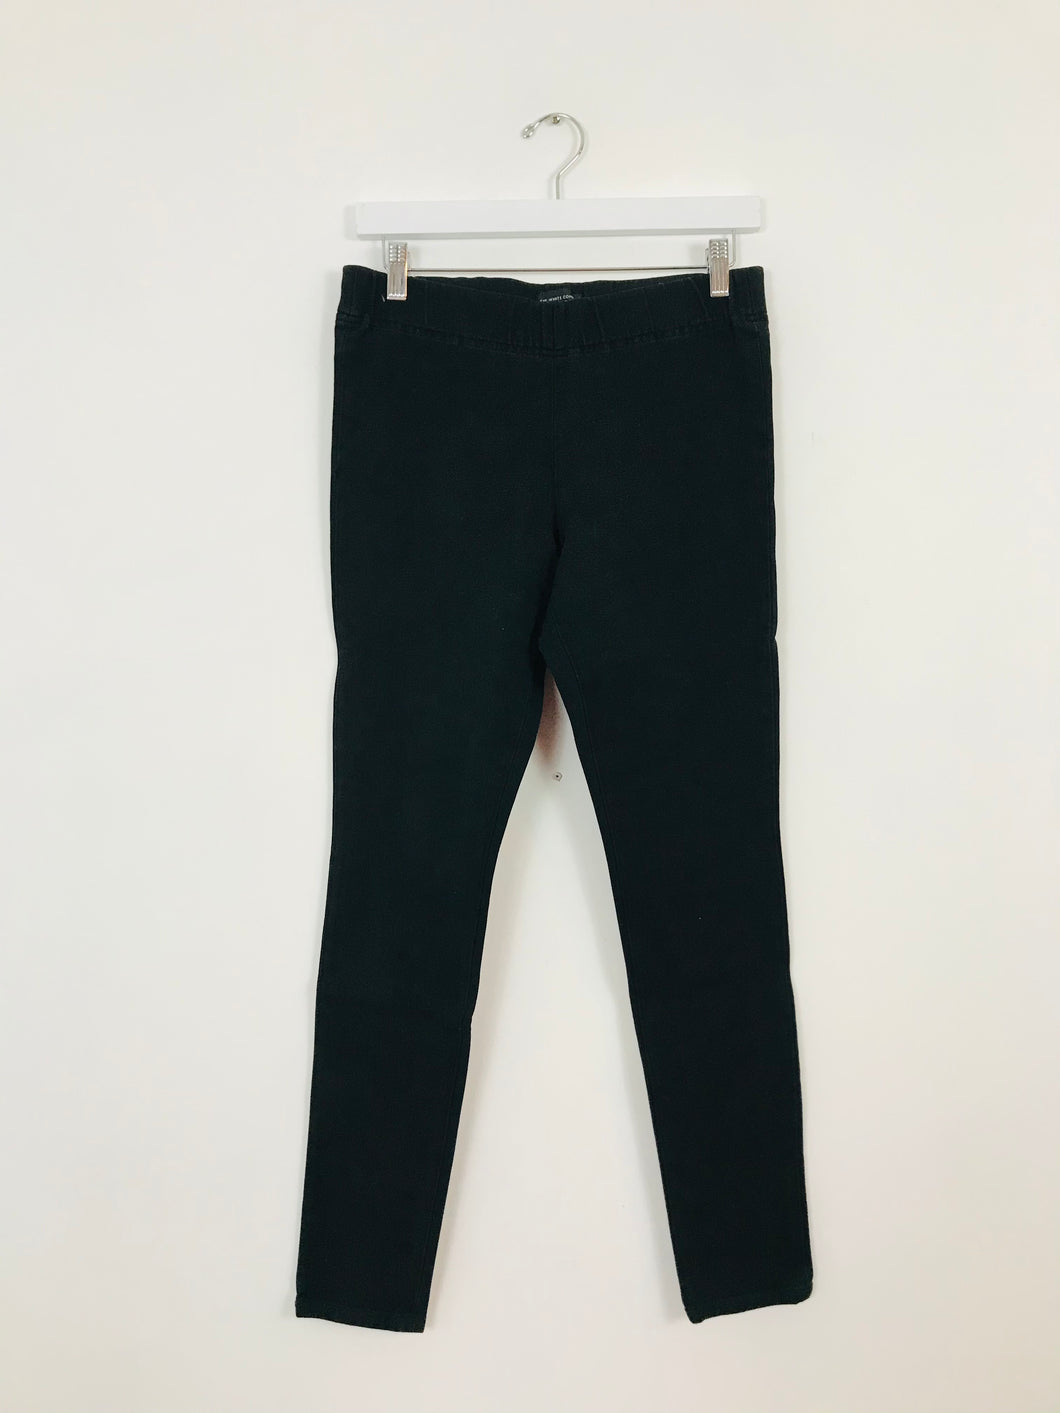 The White Company Women’s Jeggings Jeans Leggings | UK10-12 | Black